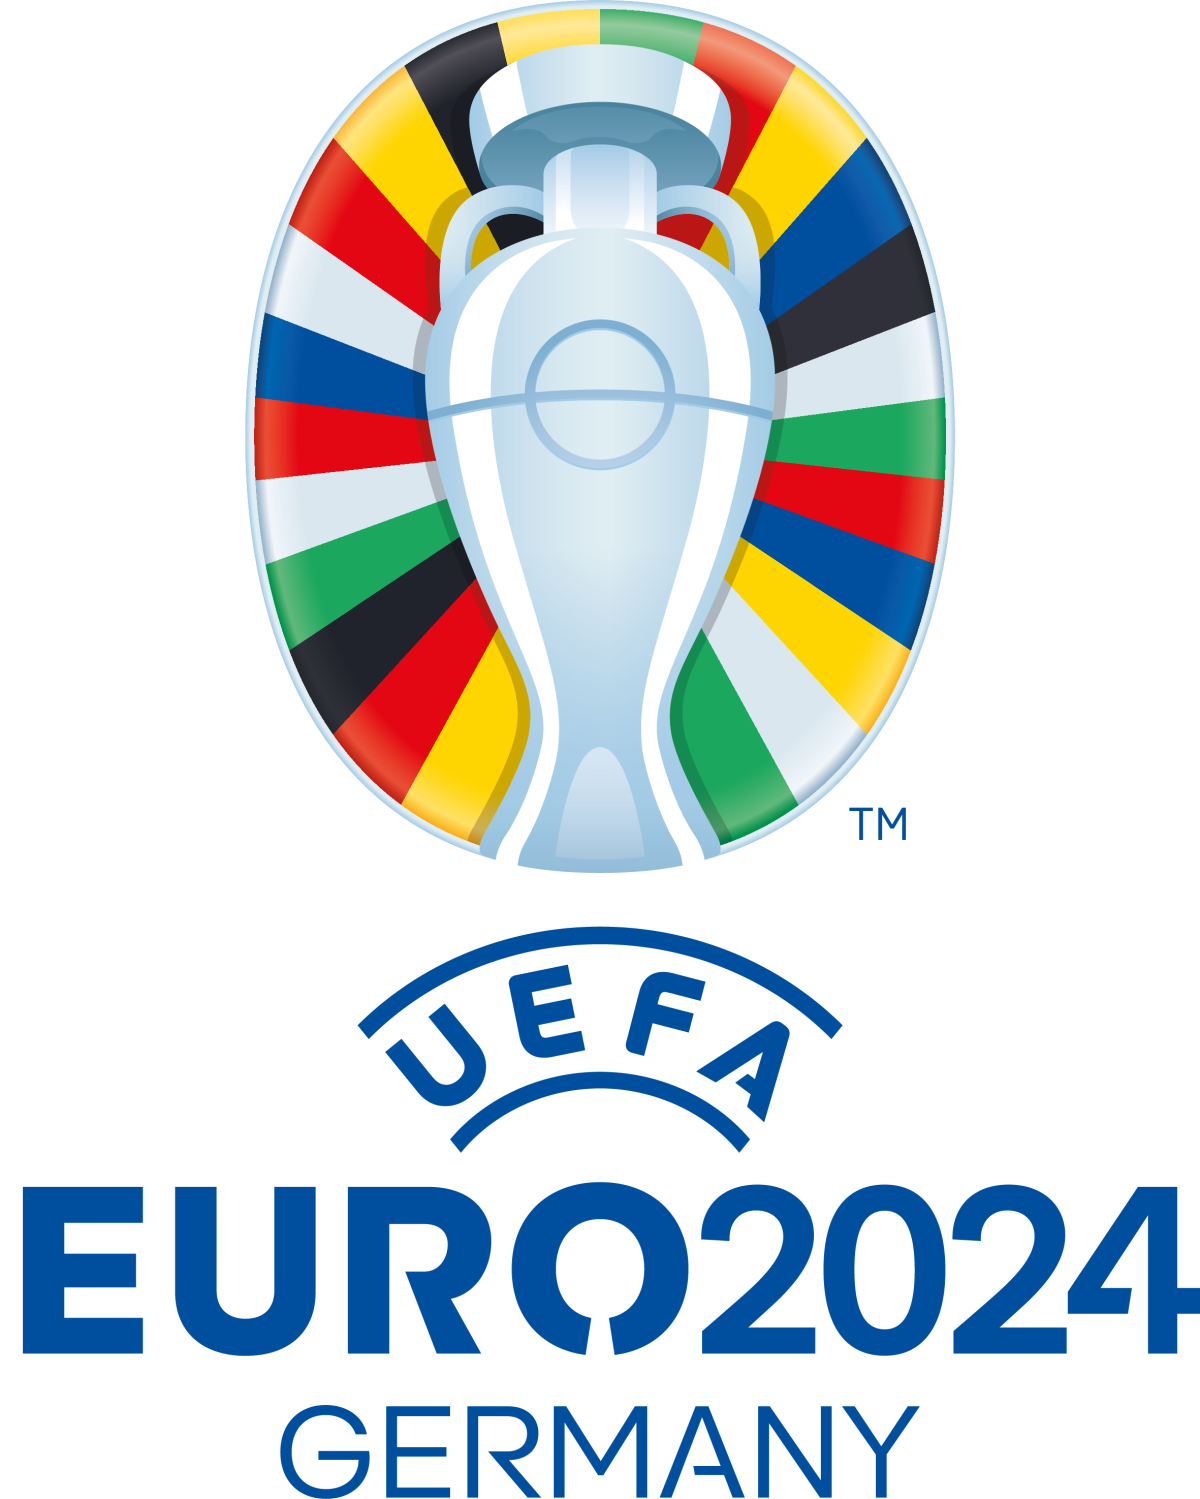 UEFA Euro 2024